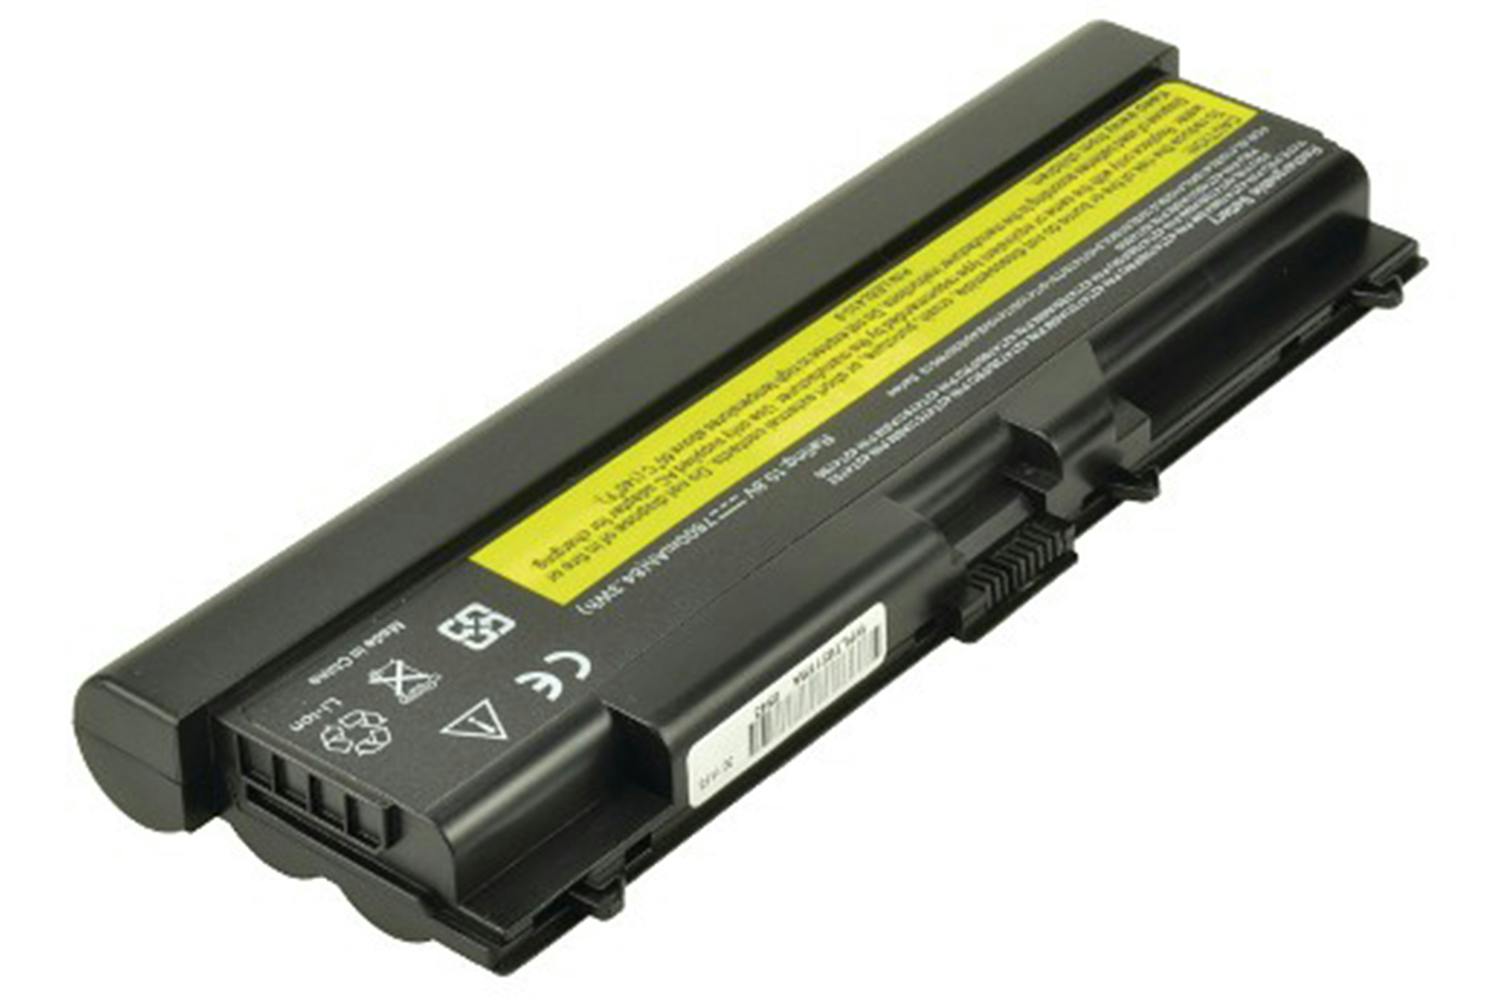 2-Power Main Battery Pack 11.1V 6900mAh